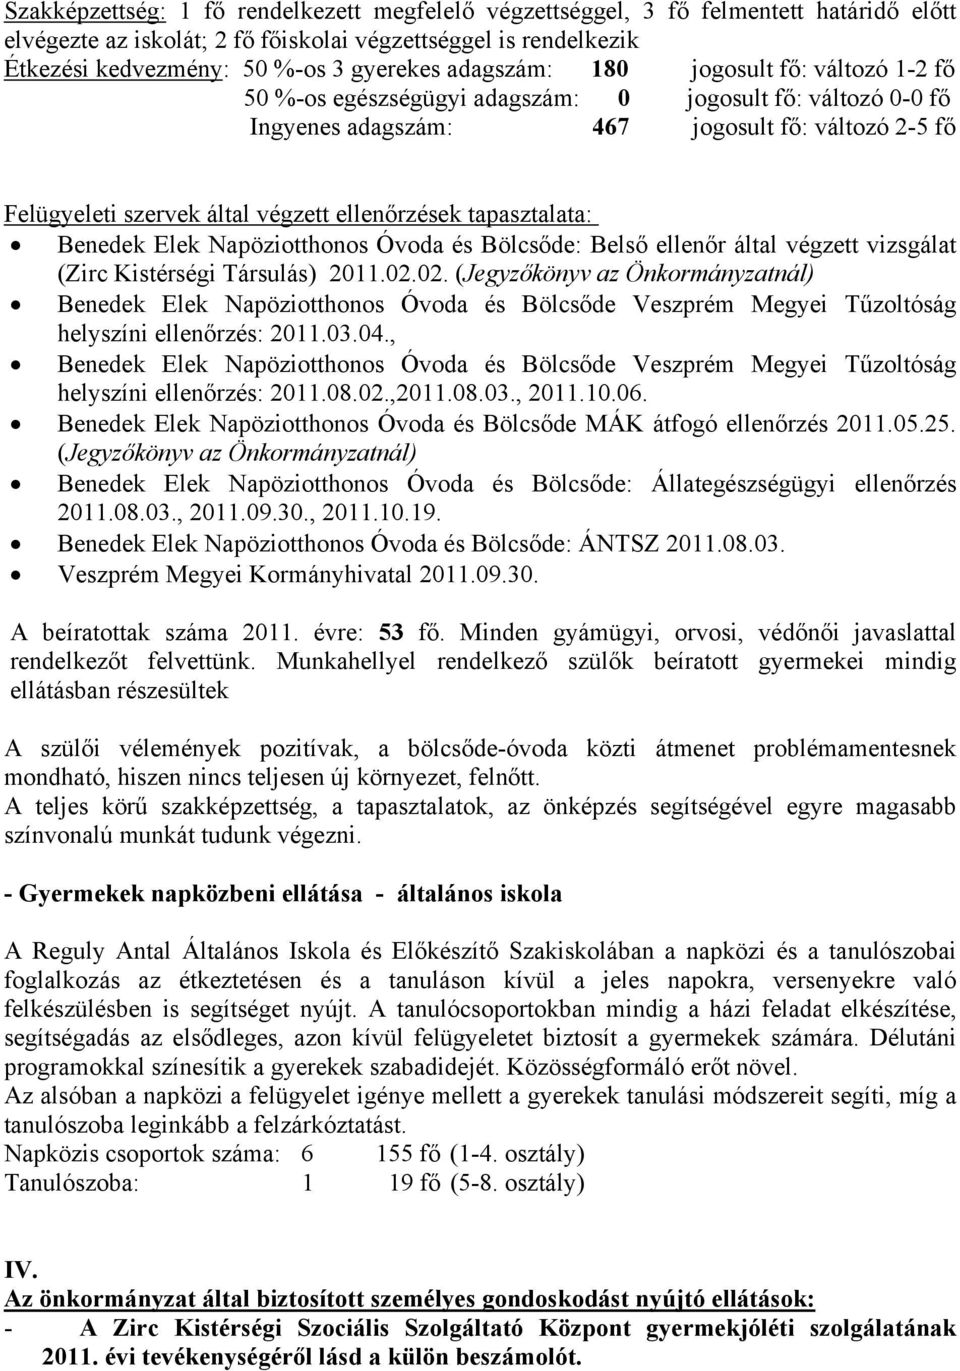 ellenőrzések tapasztalata: Benedek Elek Napöziotthonos Óvoda és Bölcsőde: Belső ellenőr által végzett vizsgálat (Zirc Kistérségi Társulás) 2011.02.